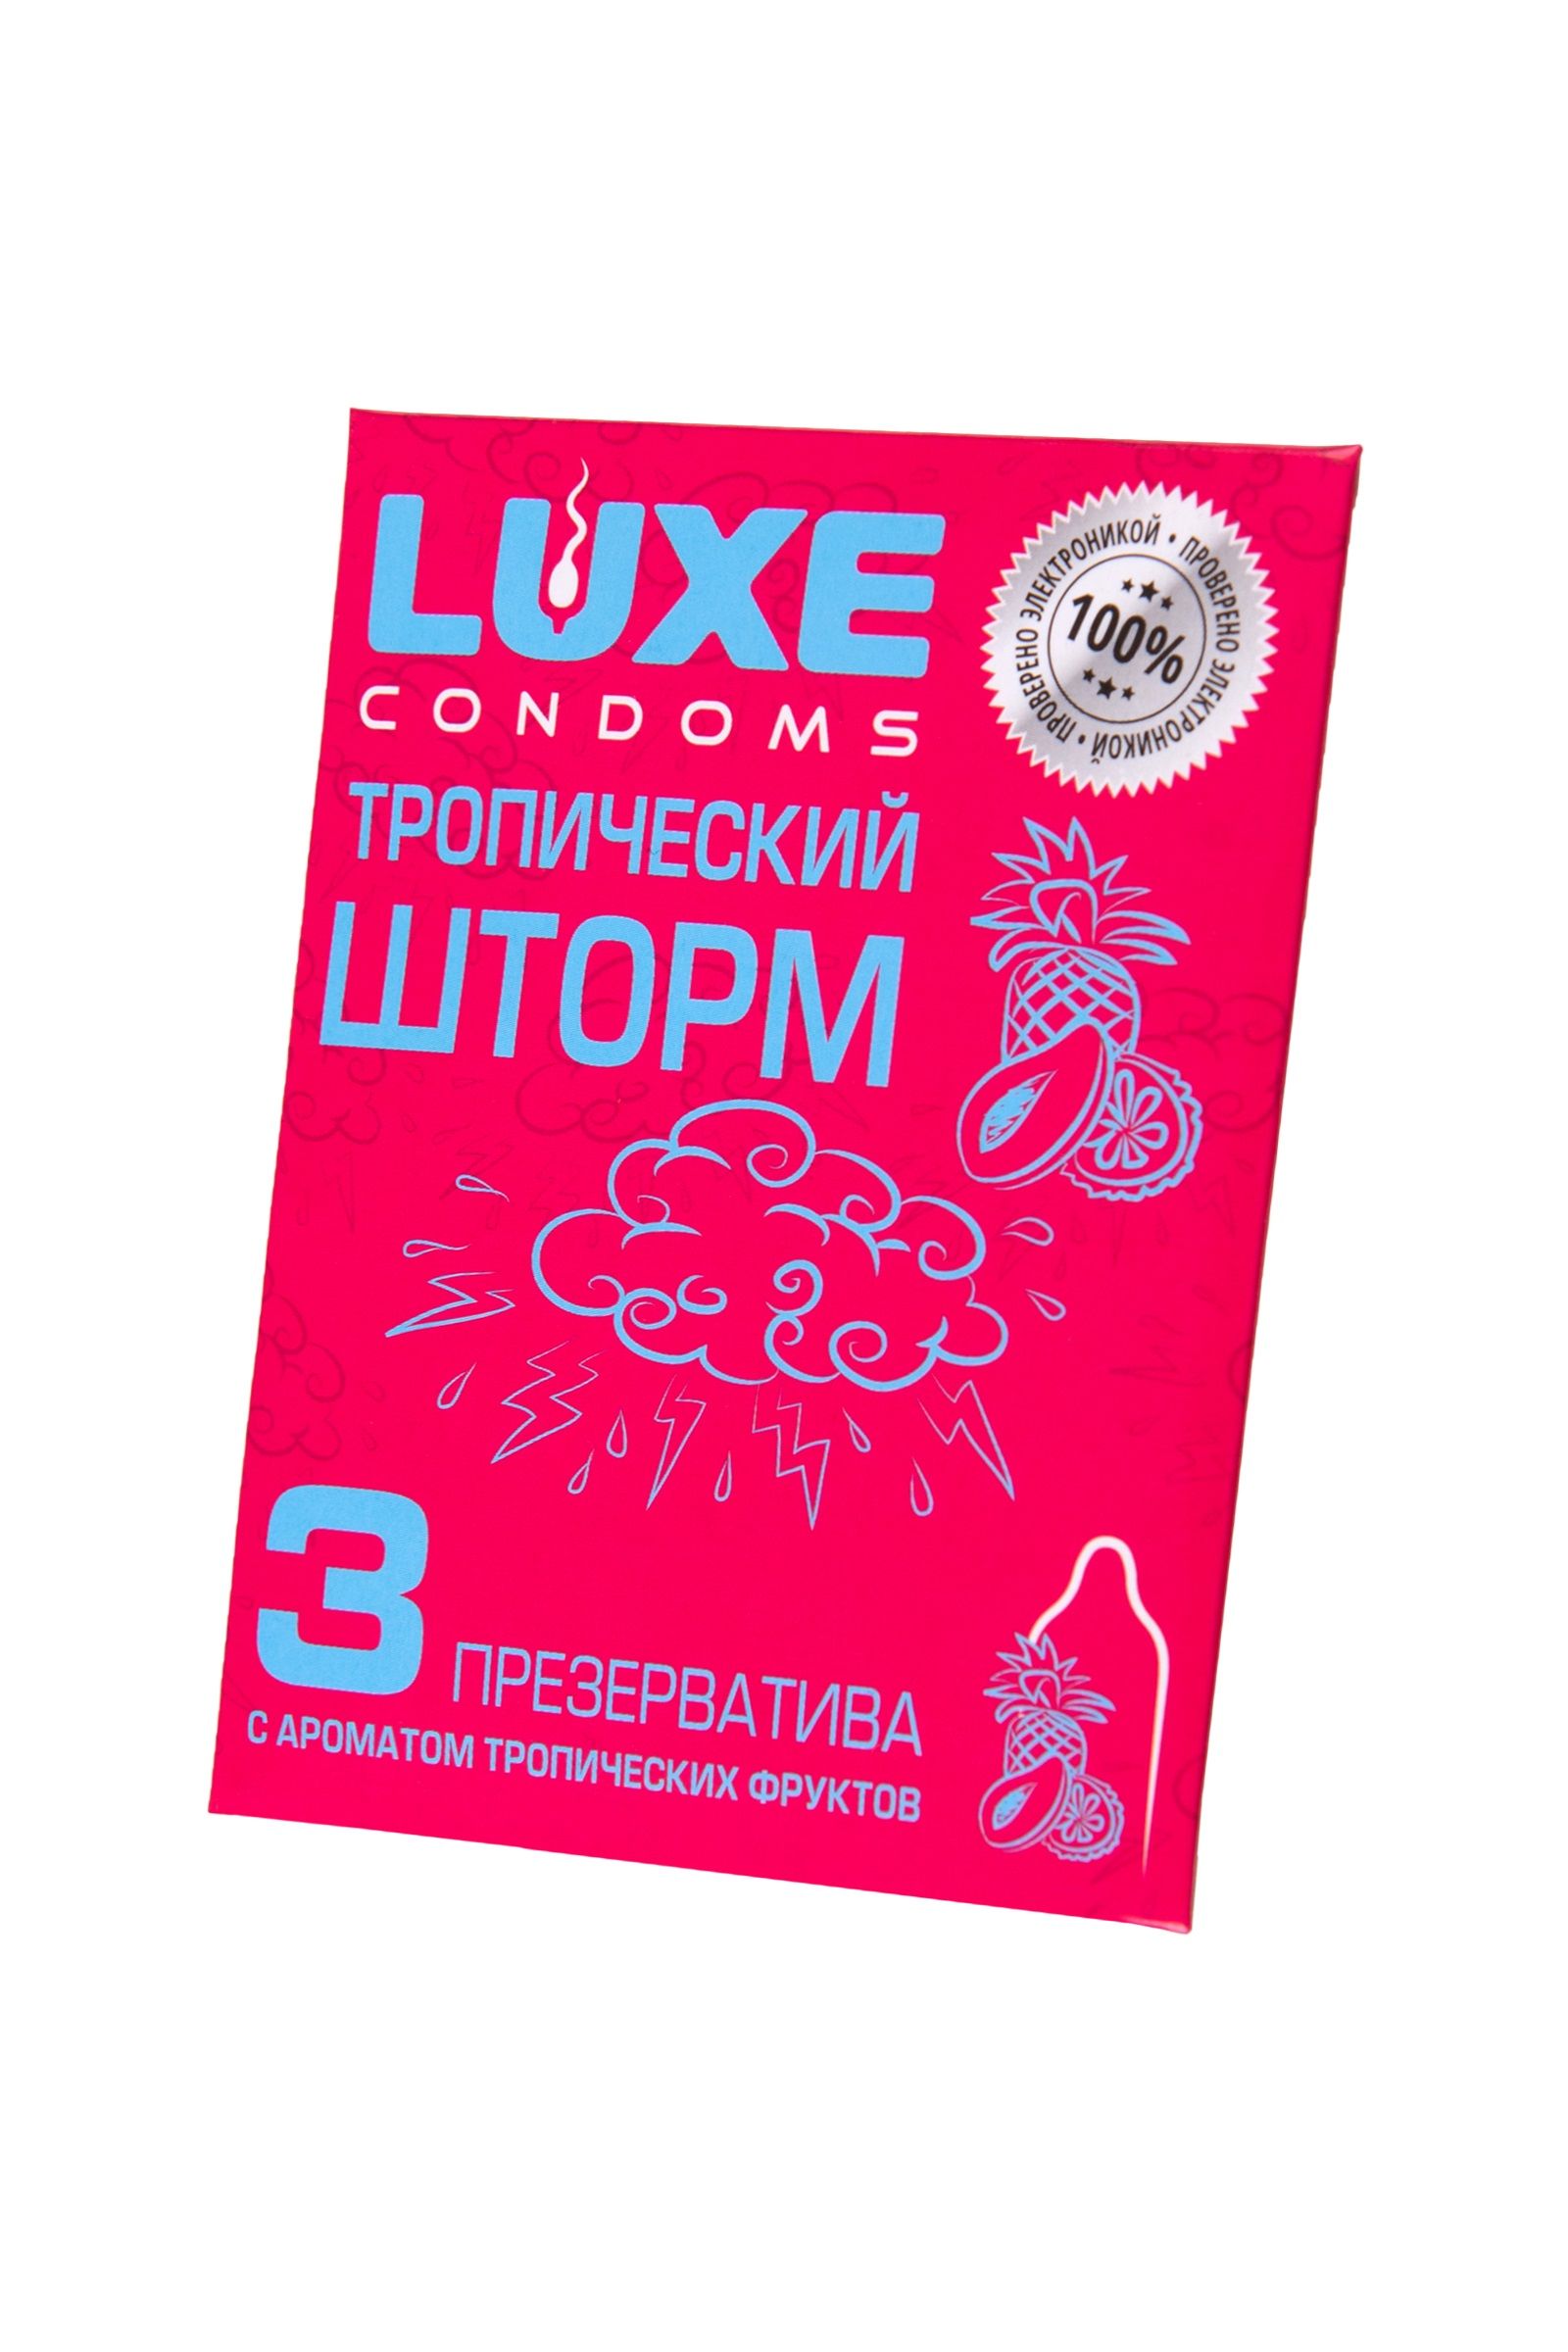 Презервативы с ароматом тропический фруктов  Тропический шторм  - 3 шт. (цвет не указан)